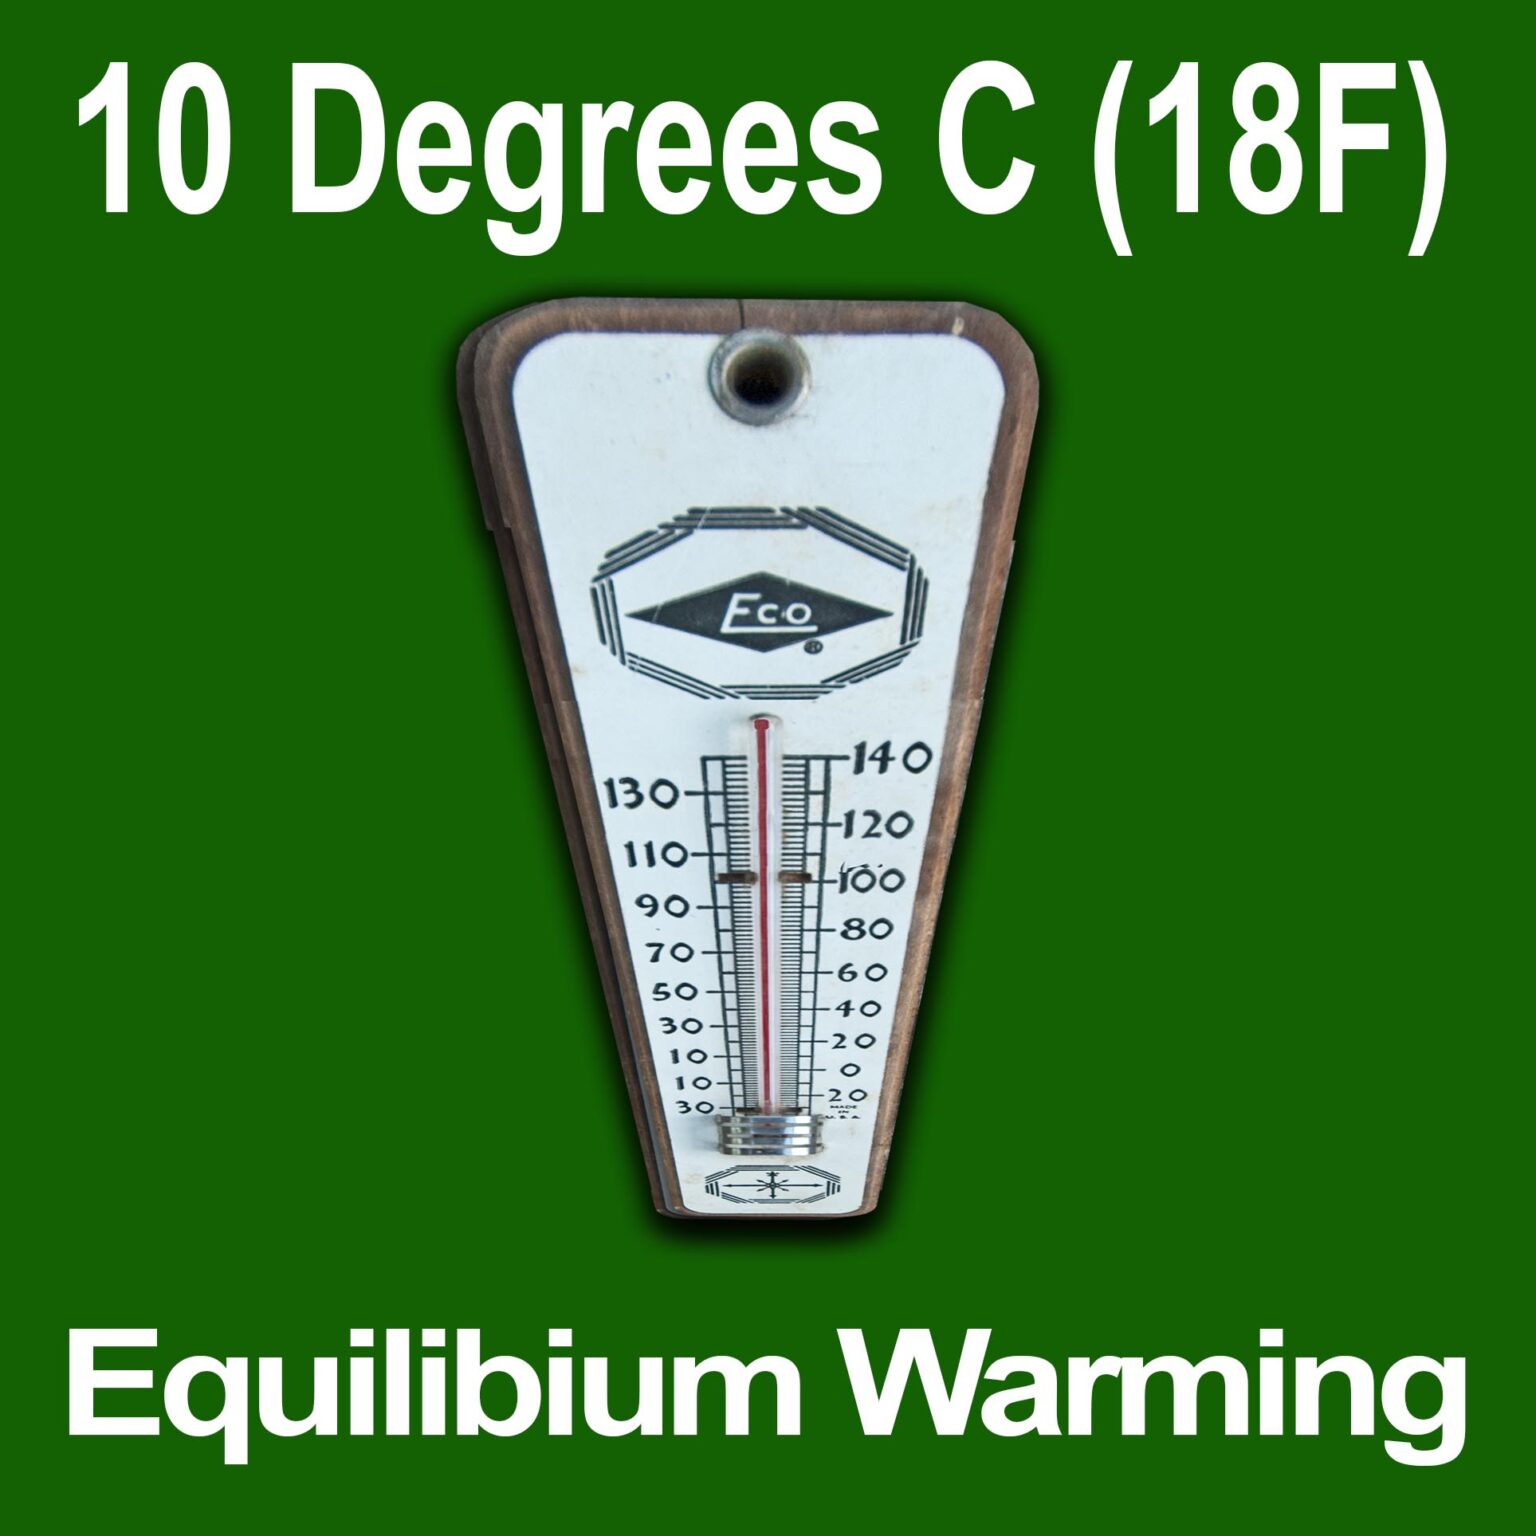 10 Degrees C 18F Equilibrium Warming 1536x1536 